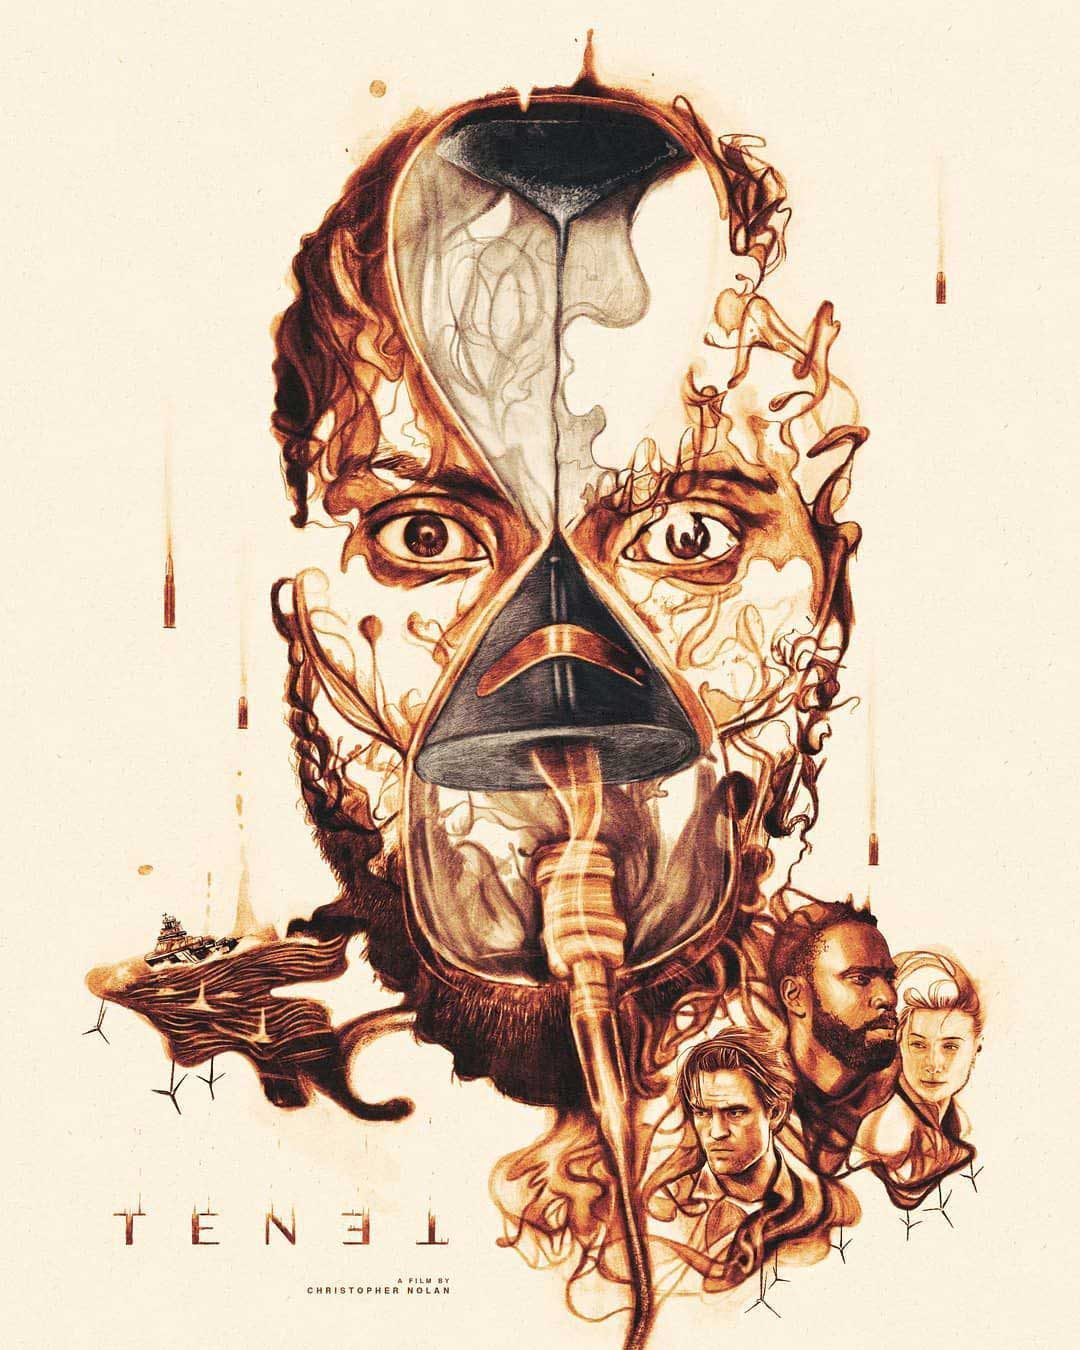 پوستر عجیب و فن آرت فیلم Tenet/تنت کریستوفر نولان با چهره صورت پروتاگونیست و نیل با بازی رابرت پتینسون